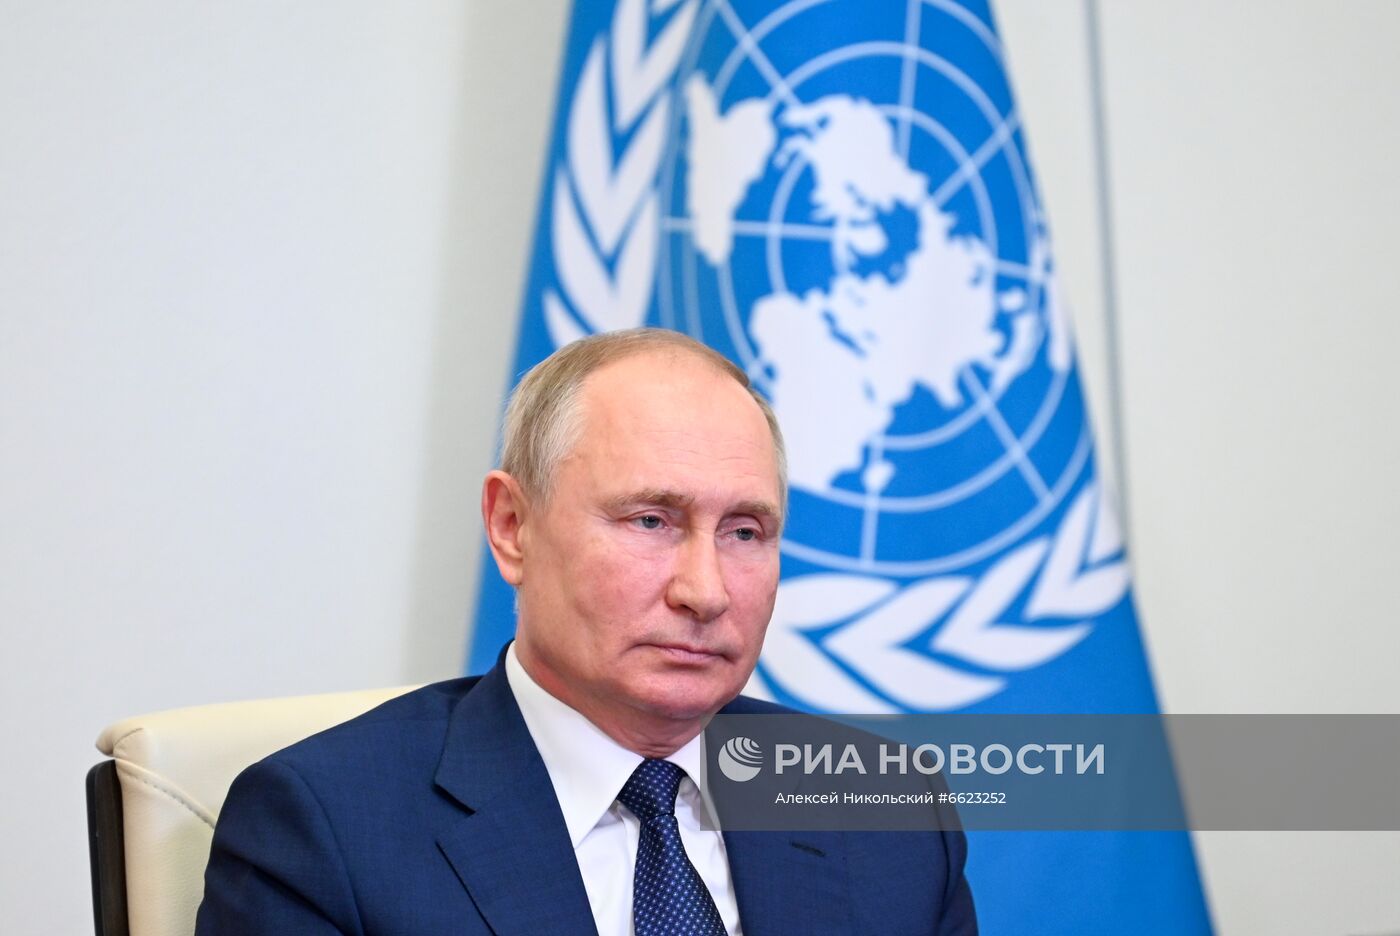 Президент РФ В. Путин принял участие в конференции Совета безопасности ООН по укреплению морской безопасности